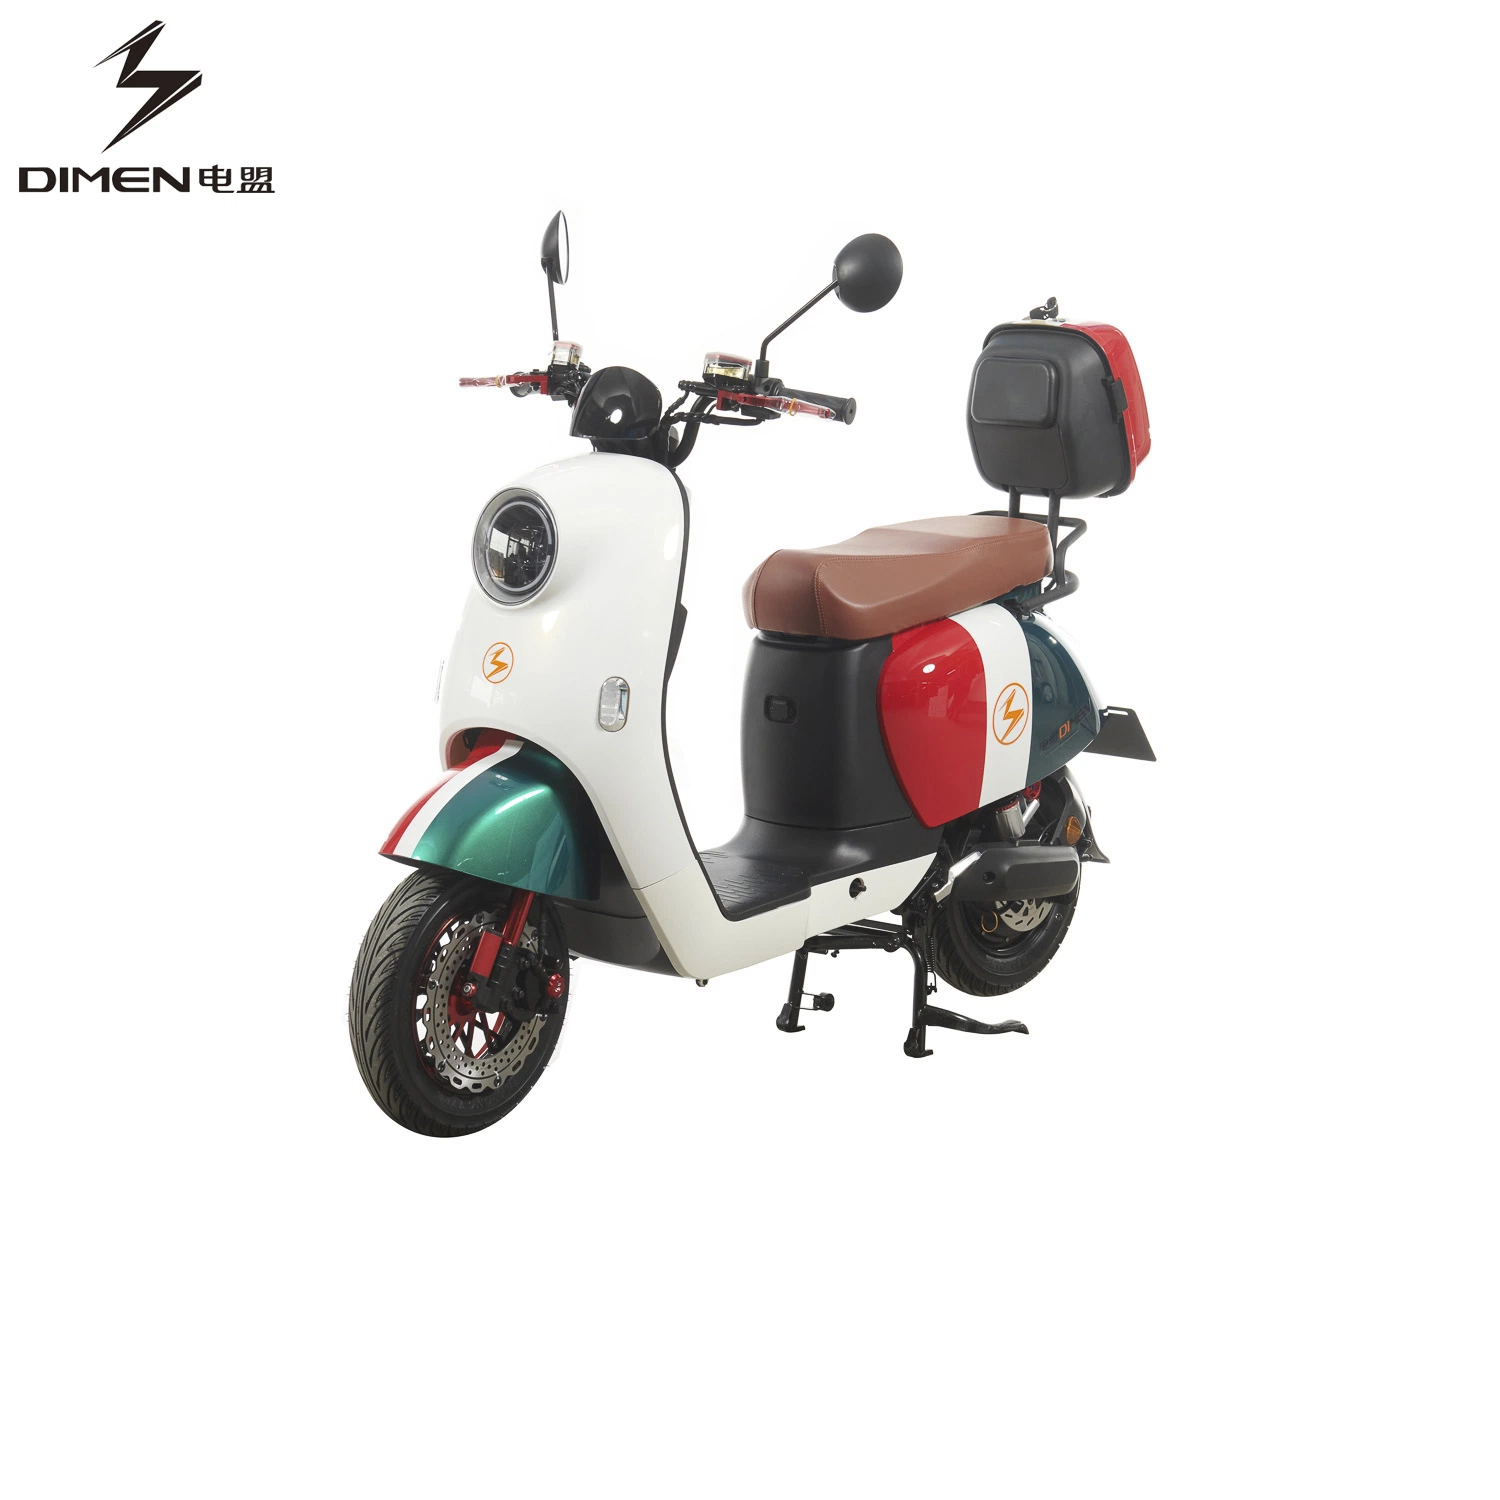 2 Rodas com novo design do modelo de Scooter Eléctrico bicicleta eléctrica